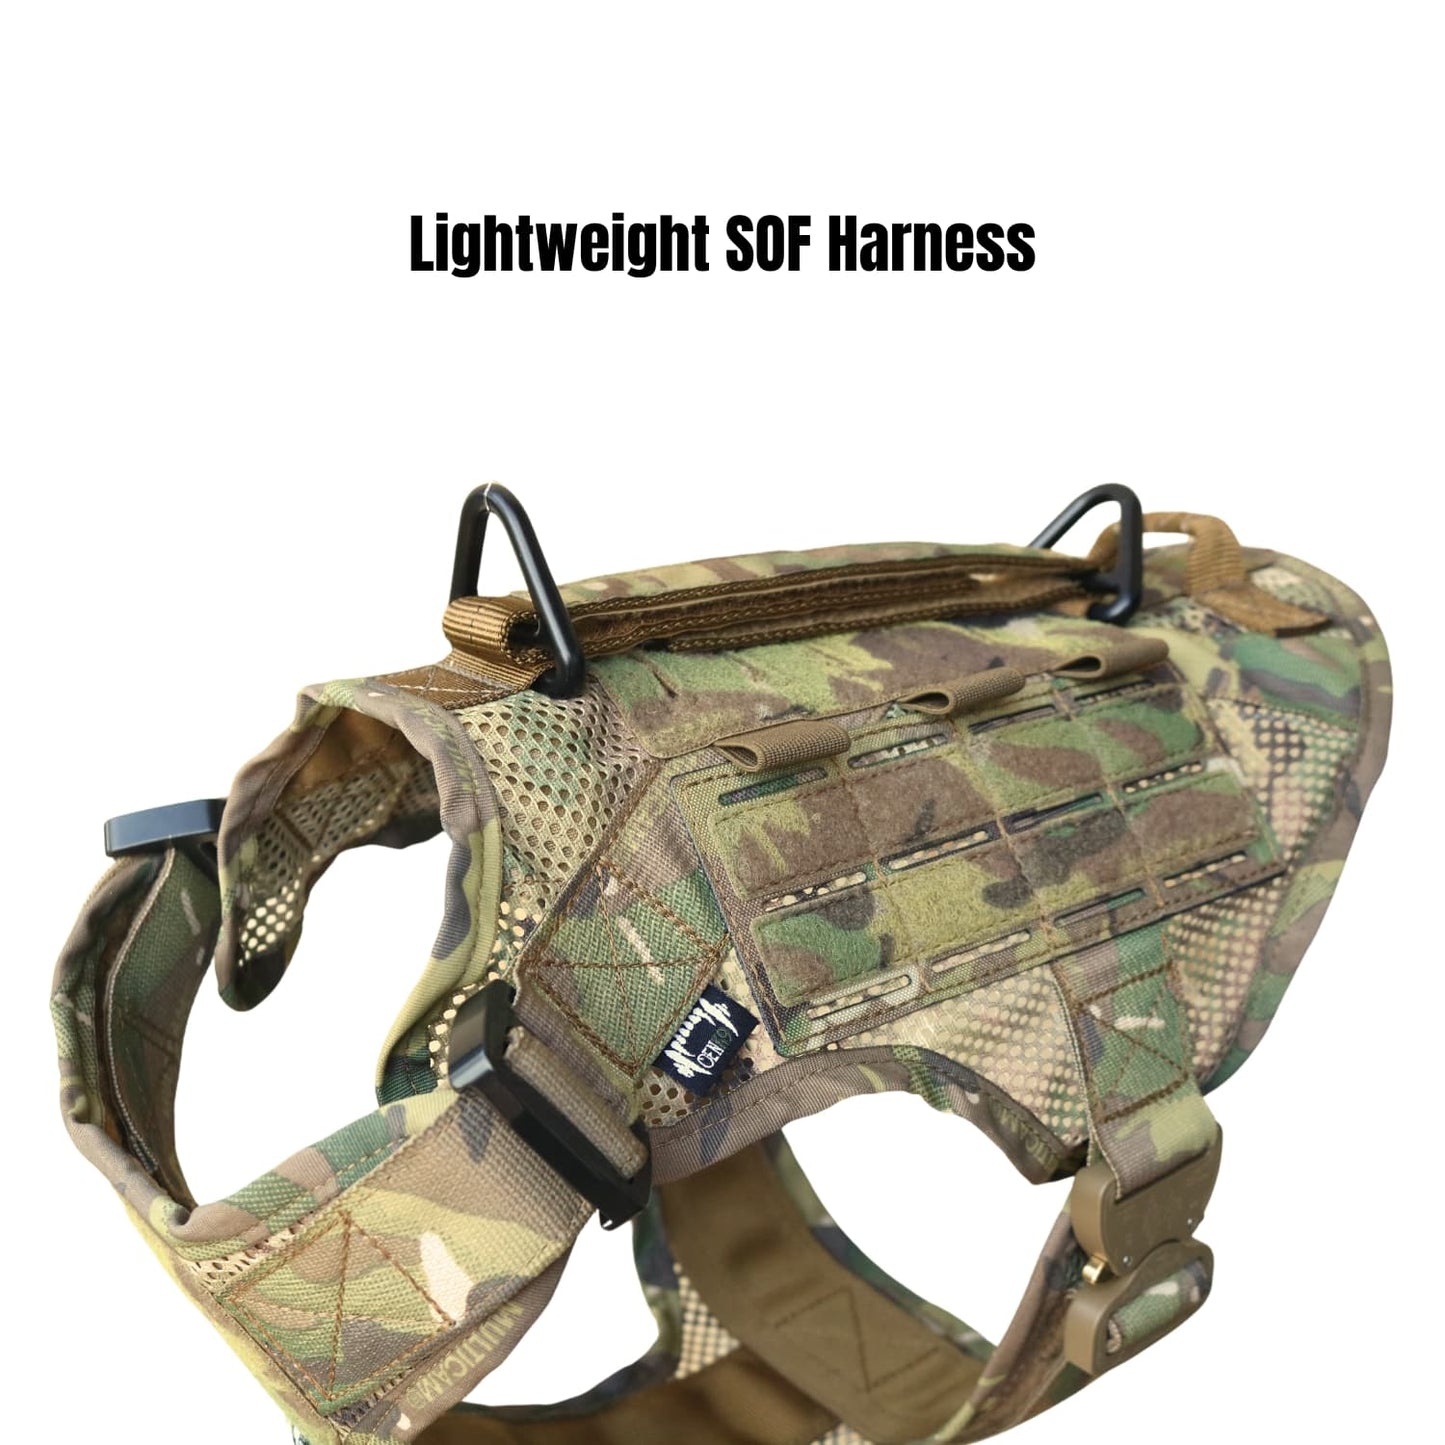 Lightweight SOF Harness